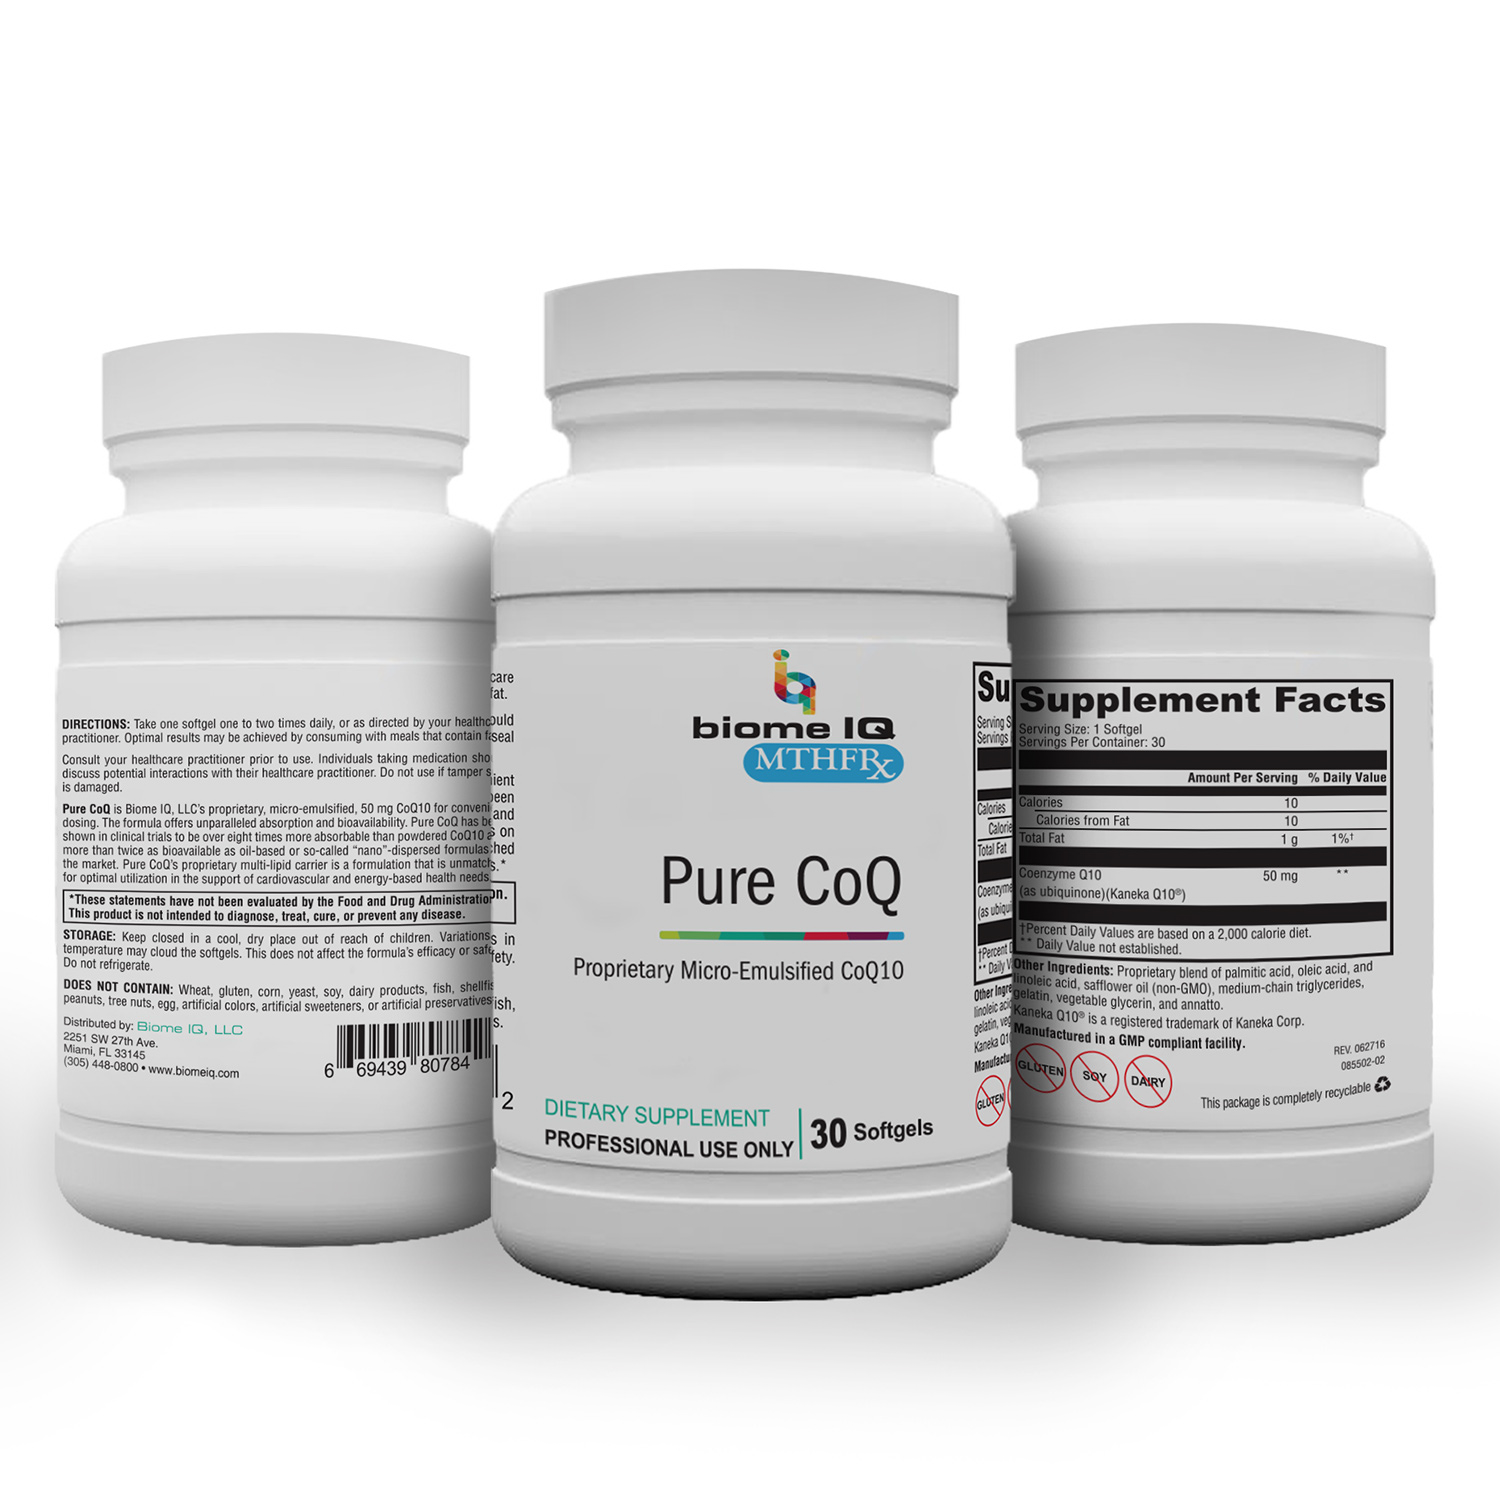 BiomeIQ MTHFR Supplements - Pure CoQ100